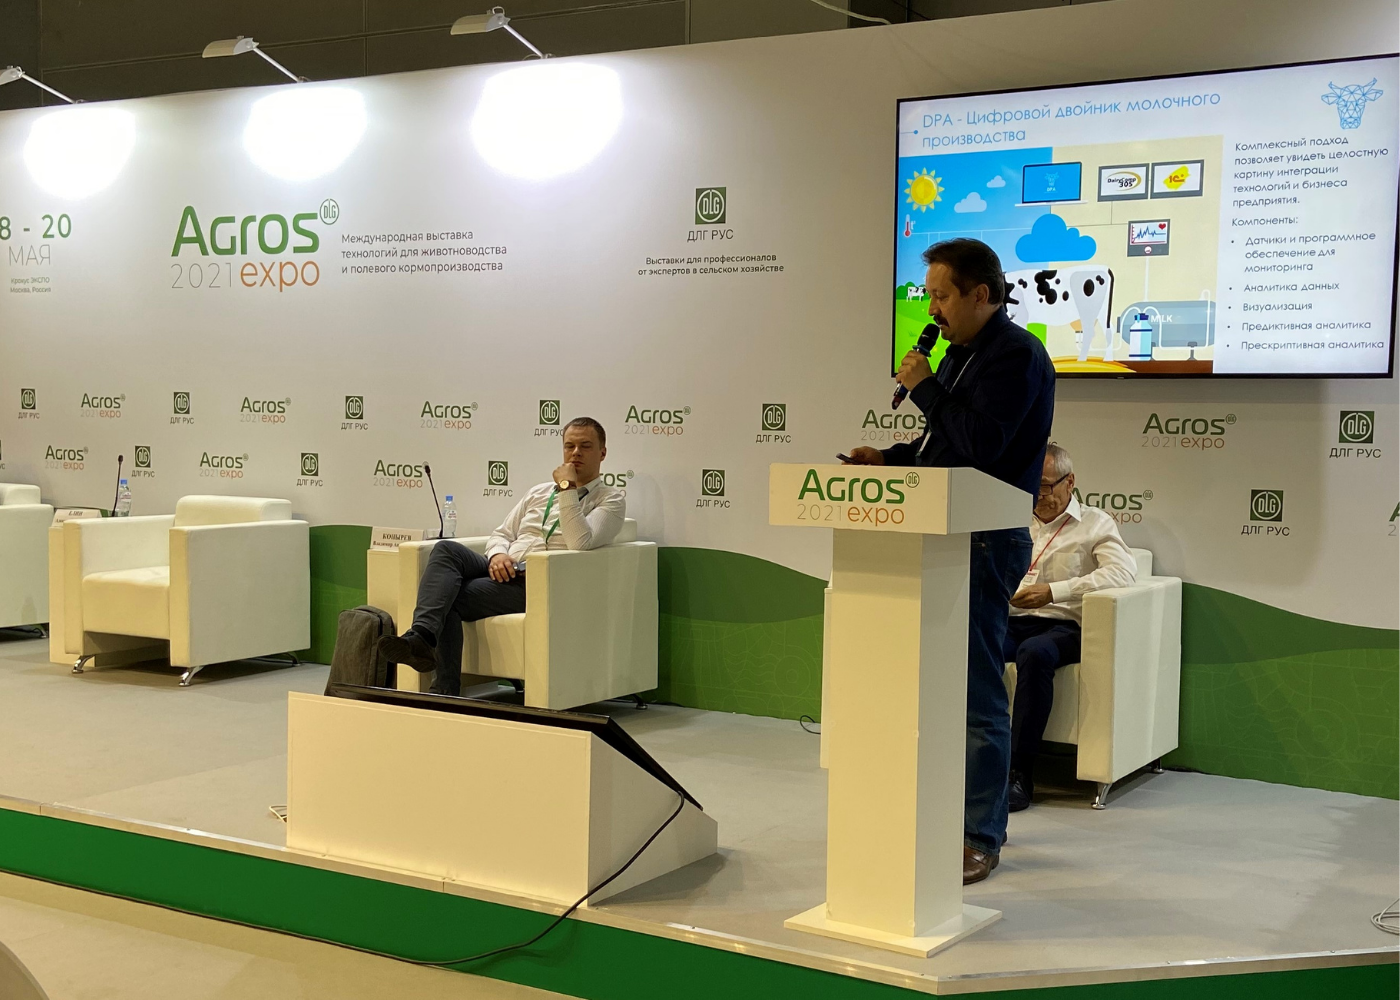 Итоги конференции АГРОС 2021 - Smart4Agro